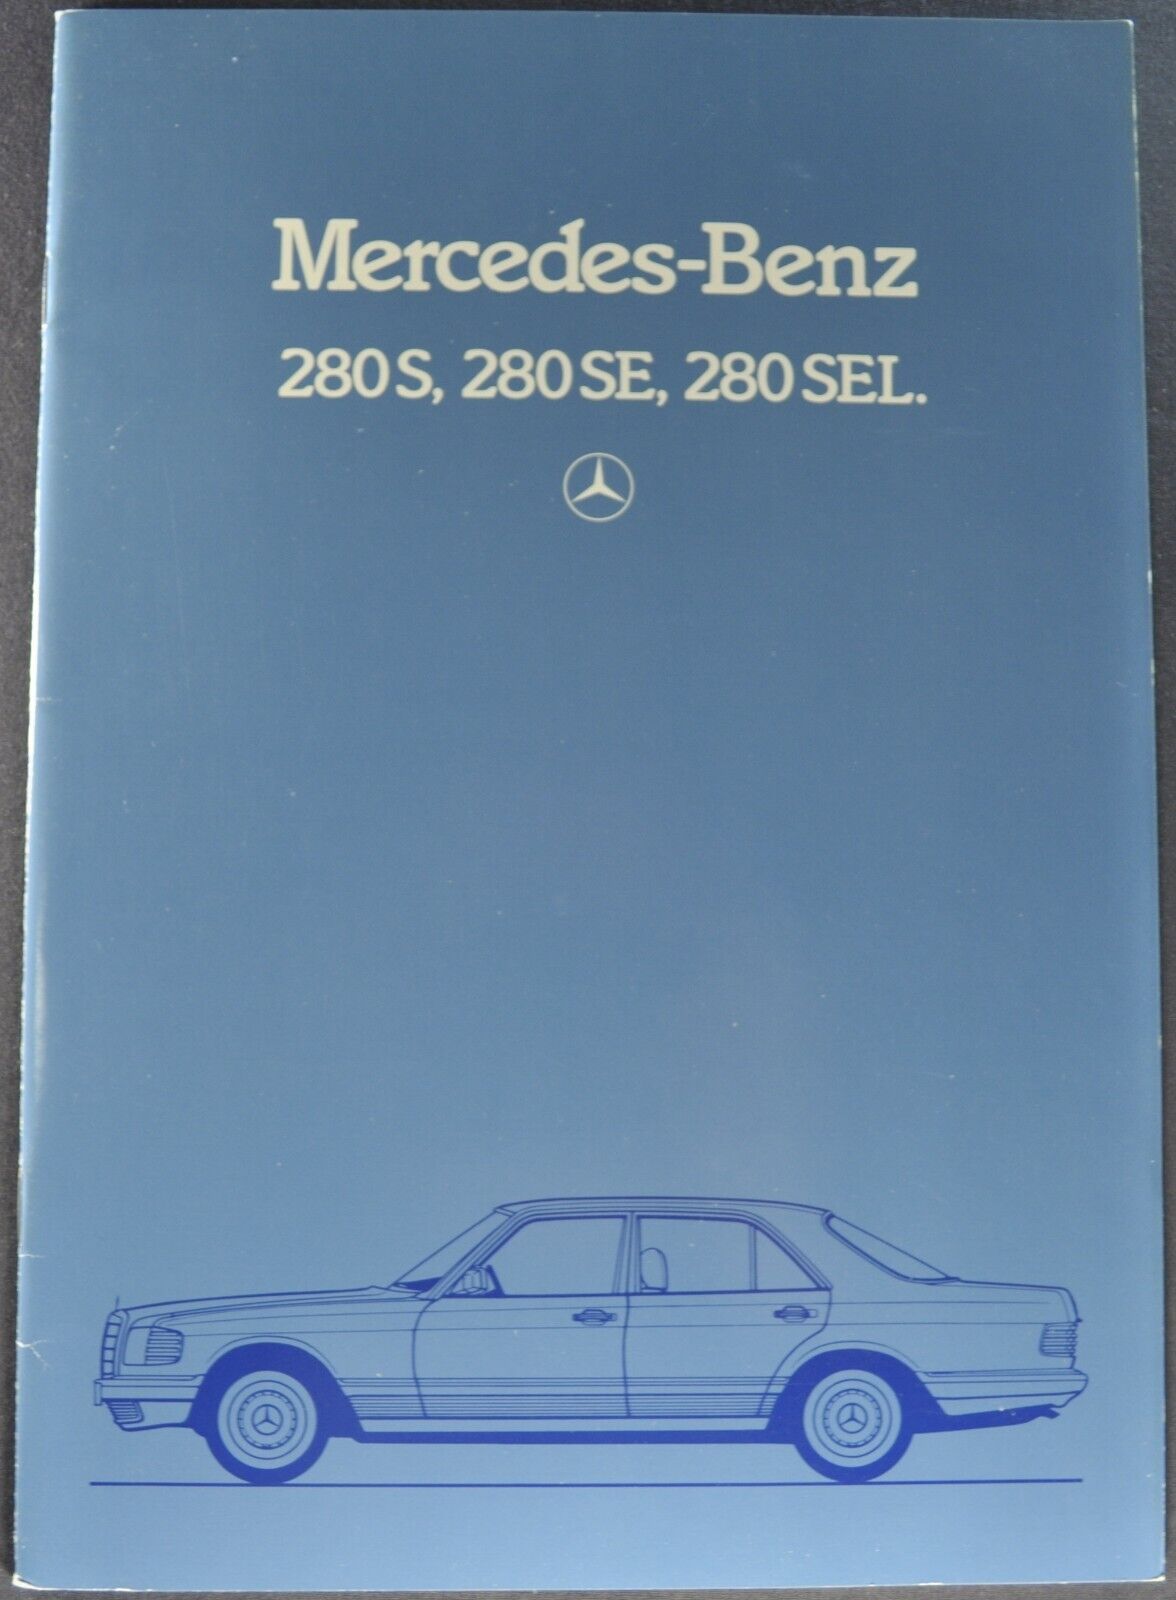 1984 Mercedes-benz Brochure 280s 280se 280sel Excellent Original German Text